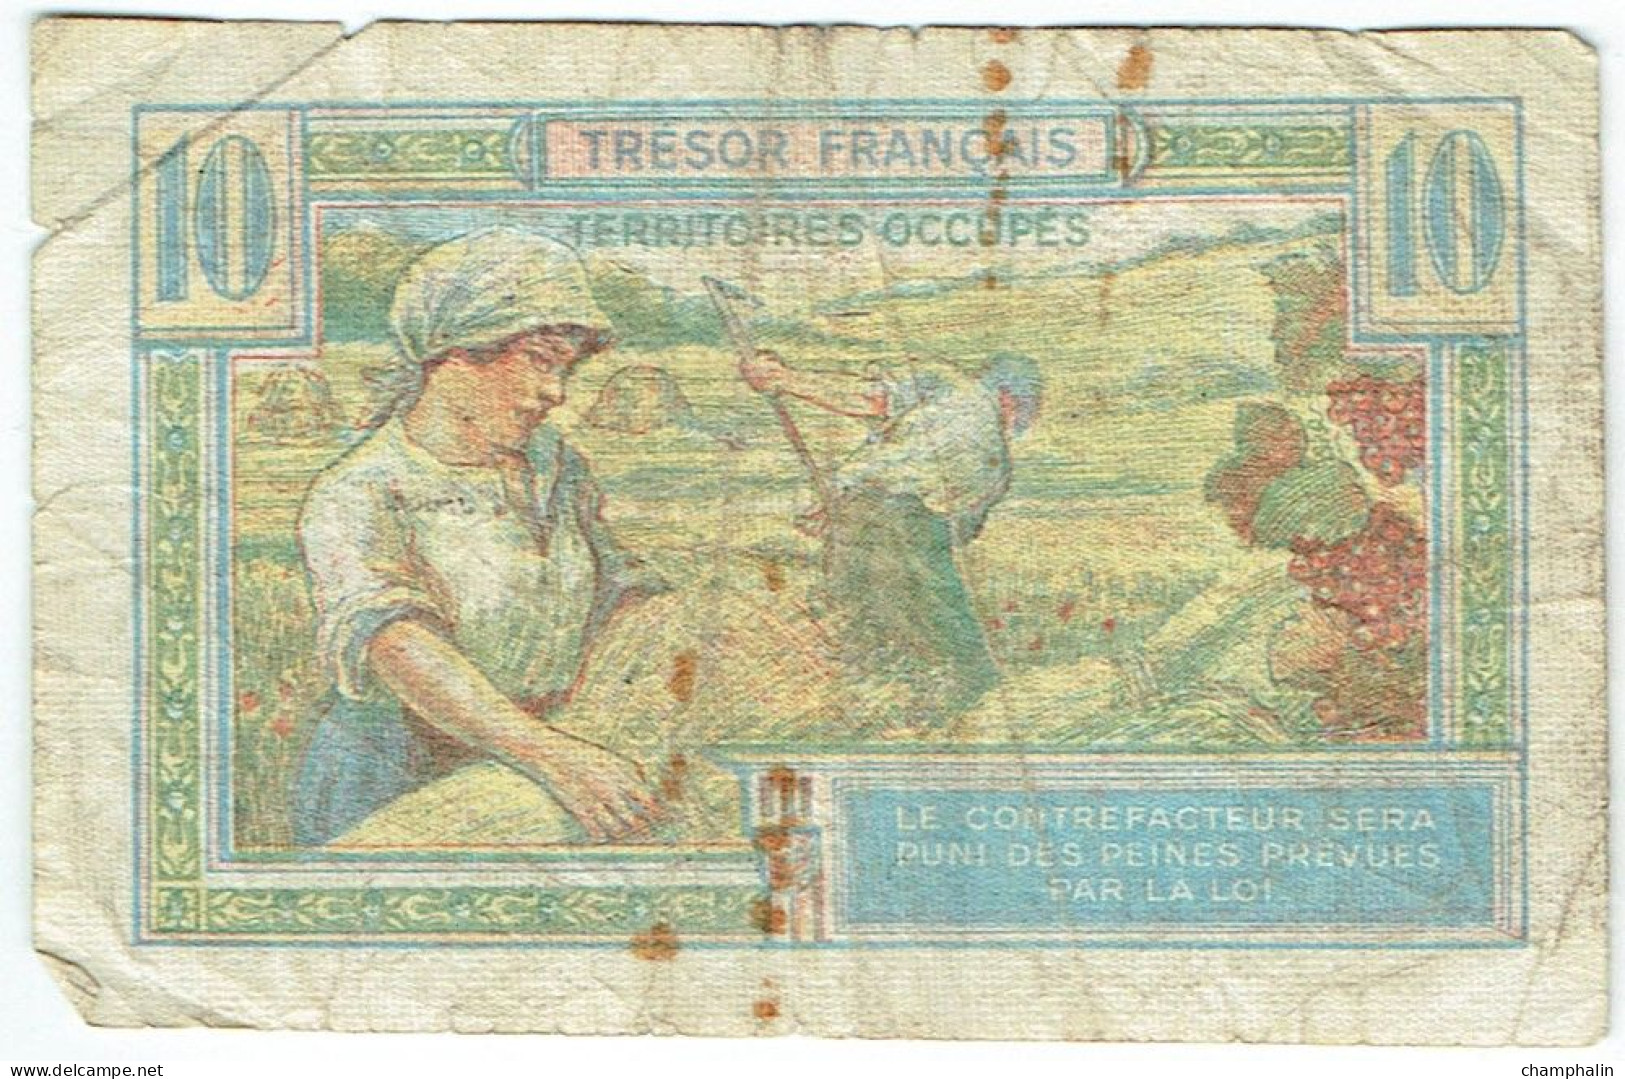 France - Billet De 10 Francs - Trésor Français - Territoires Occupés - 1947 French Treasury